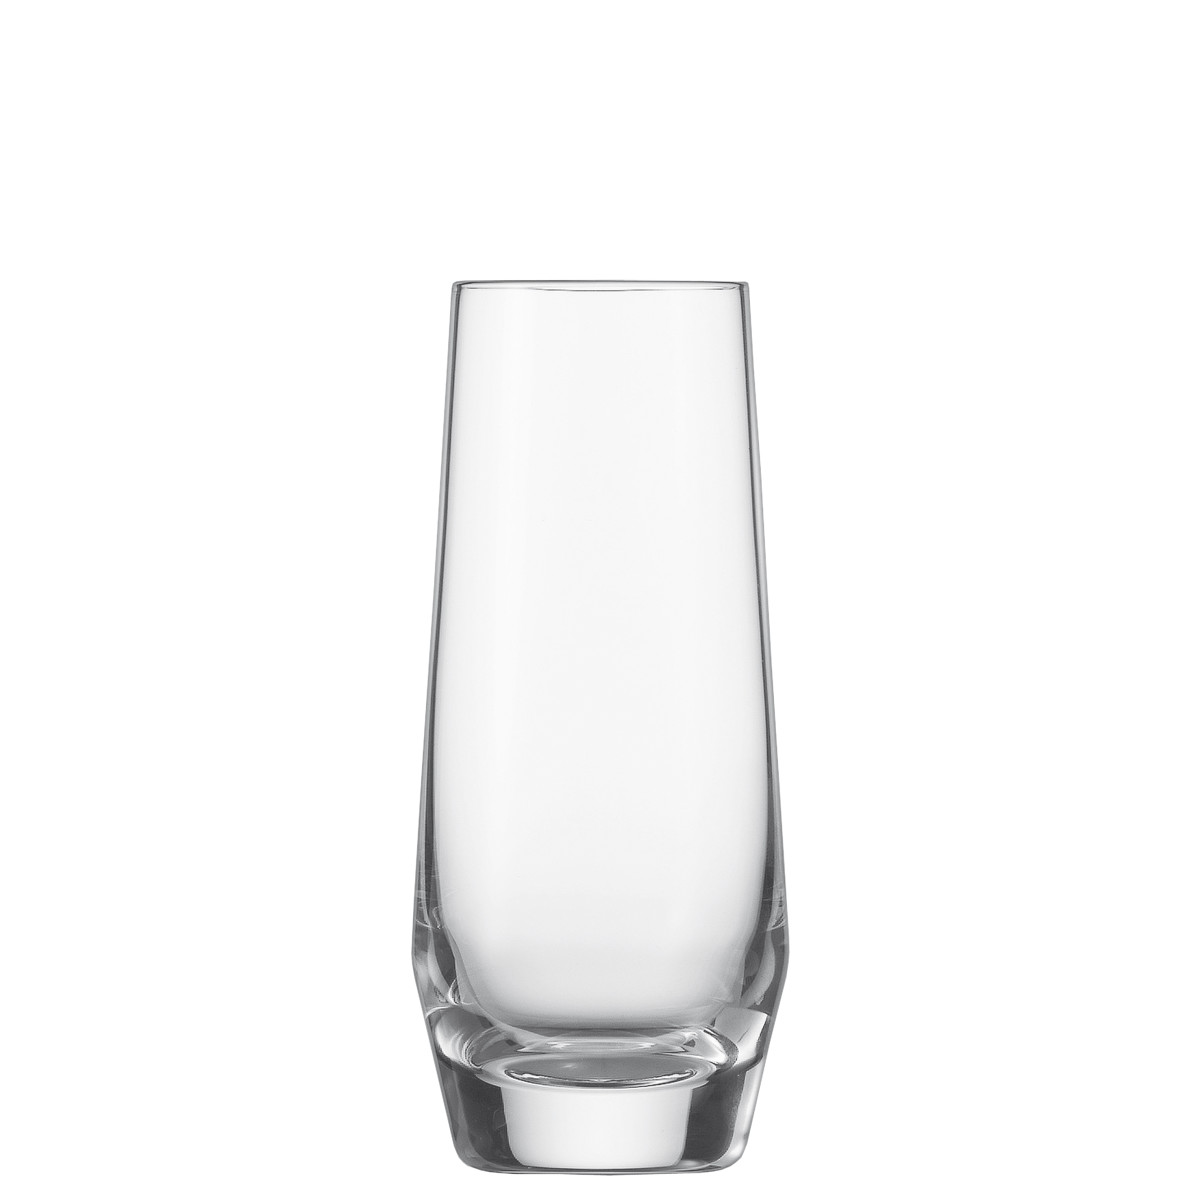 Zwiesel Glas Pure Juice/Aperitif, Set of 6